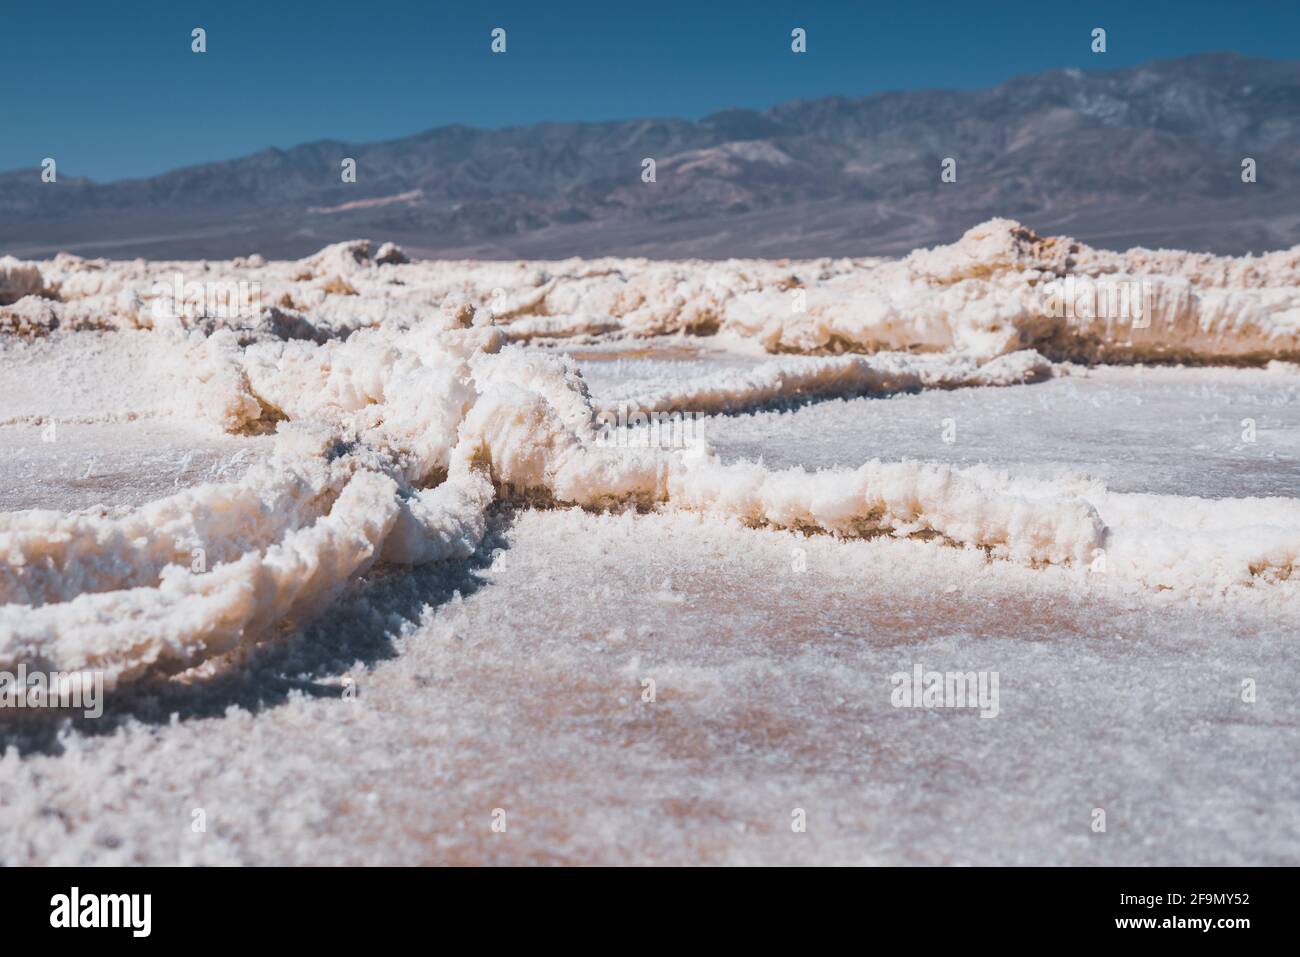 Des salées, des plaques de sel ont été réagrées sous le niveau de la mer dans le parc national de la Vallée de la mort. Gros plan sur la texture. Badwater Basin, célèbre destination touristique Banque D'Images